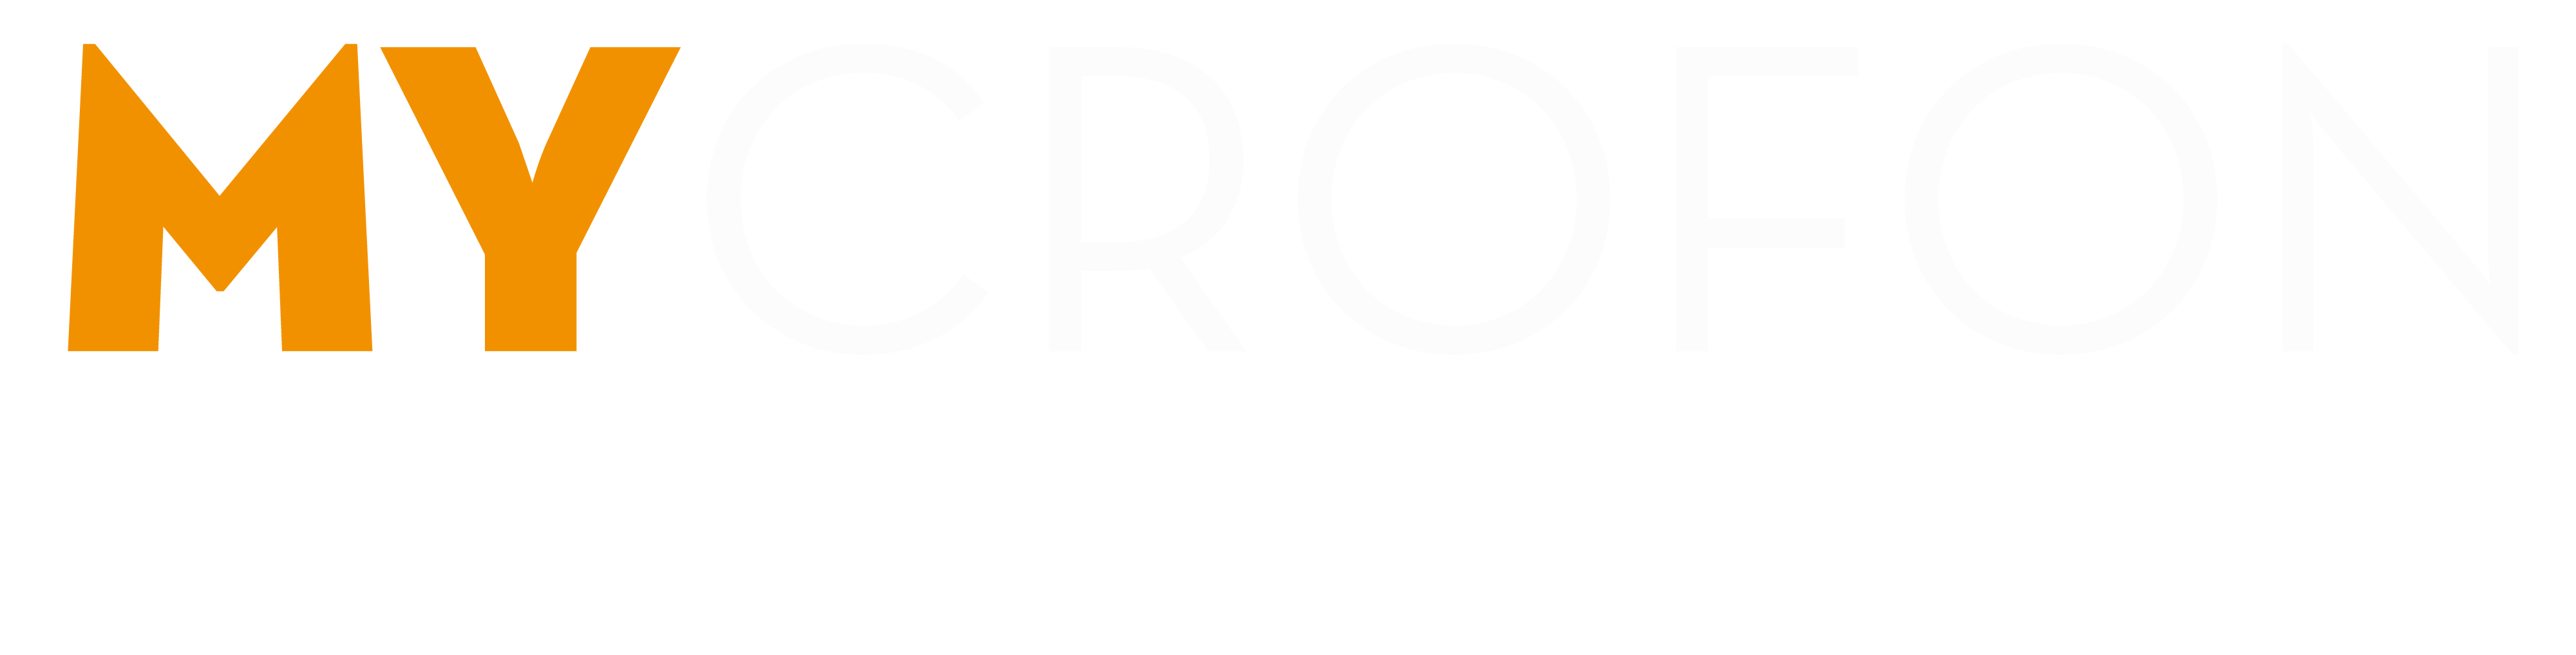 MYCROFON Podcasting Company